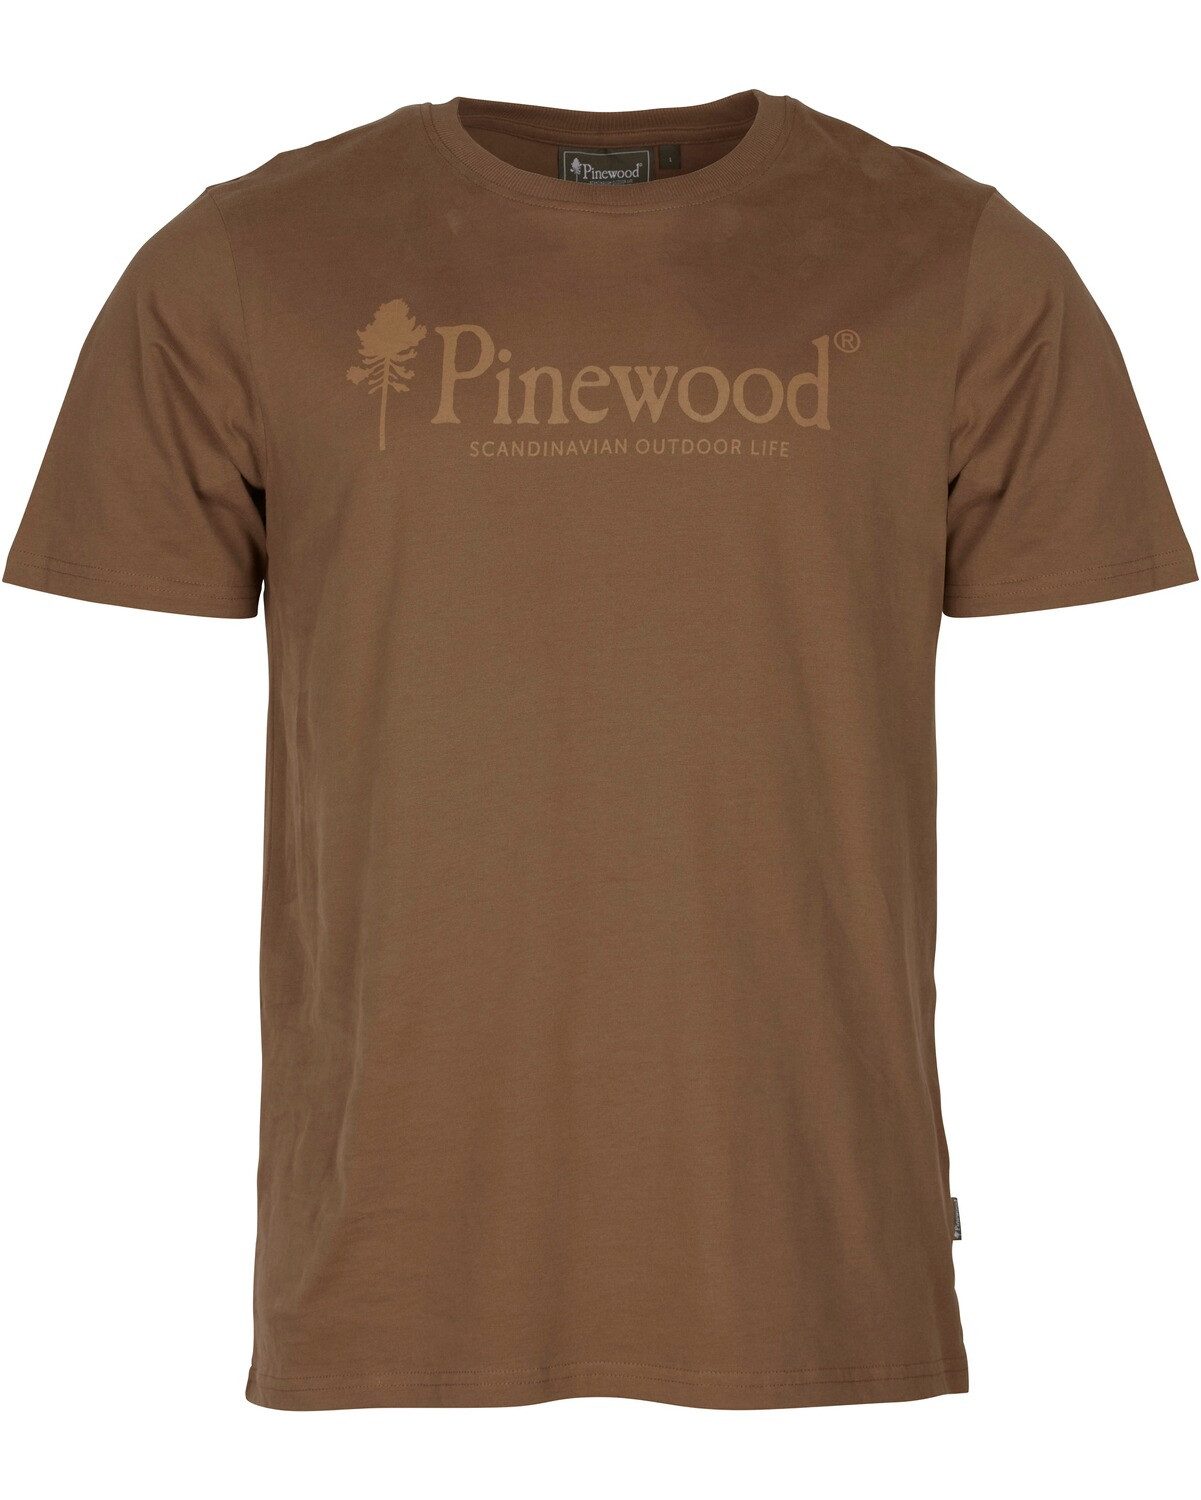 Pinewood T-Shirt T-Shirt Outdoor Life